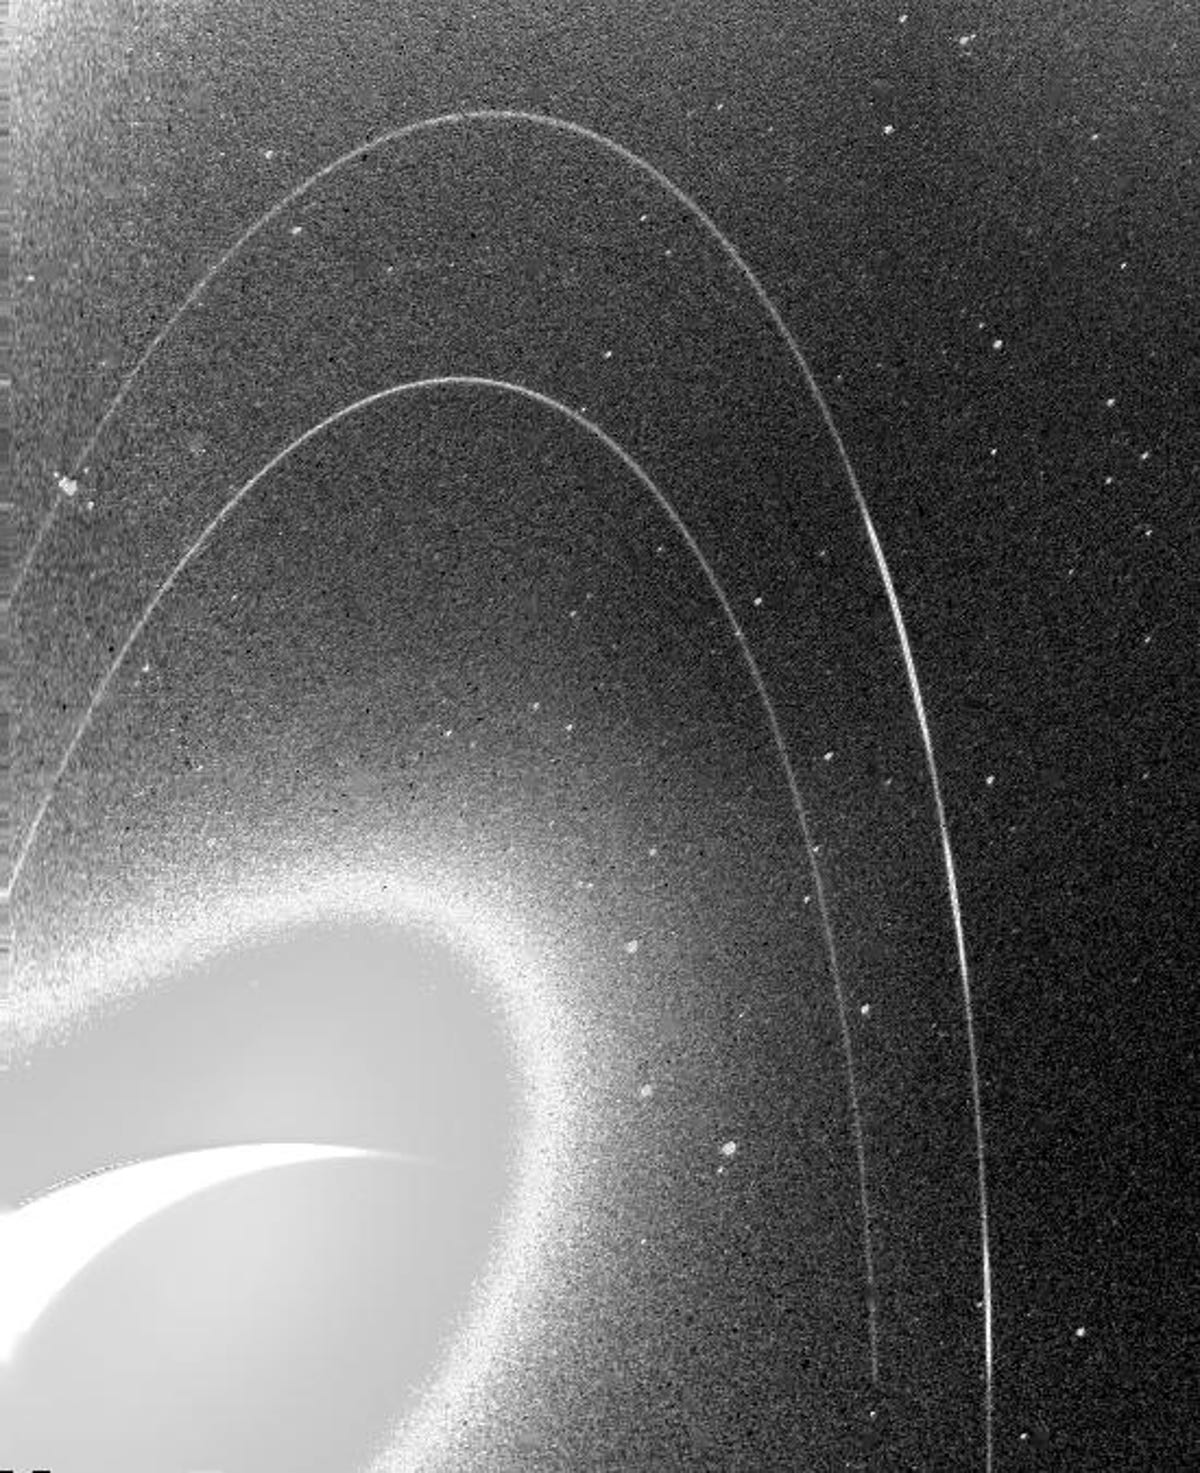 Une image granuleuse en noir et blanc révèle les anneaux fragiles de Neptune.